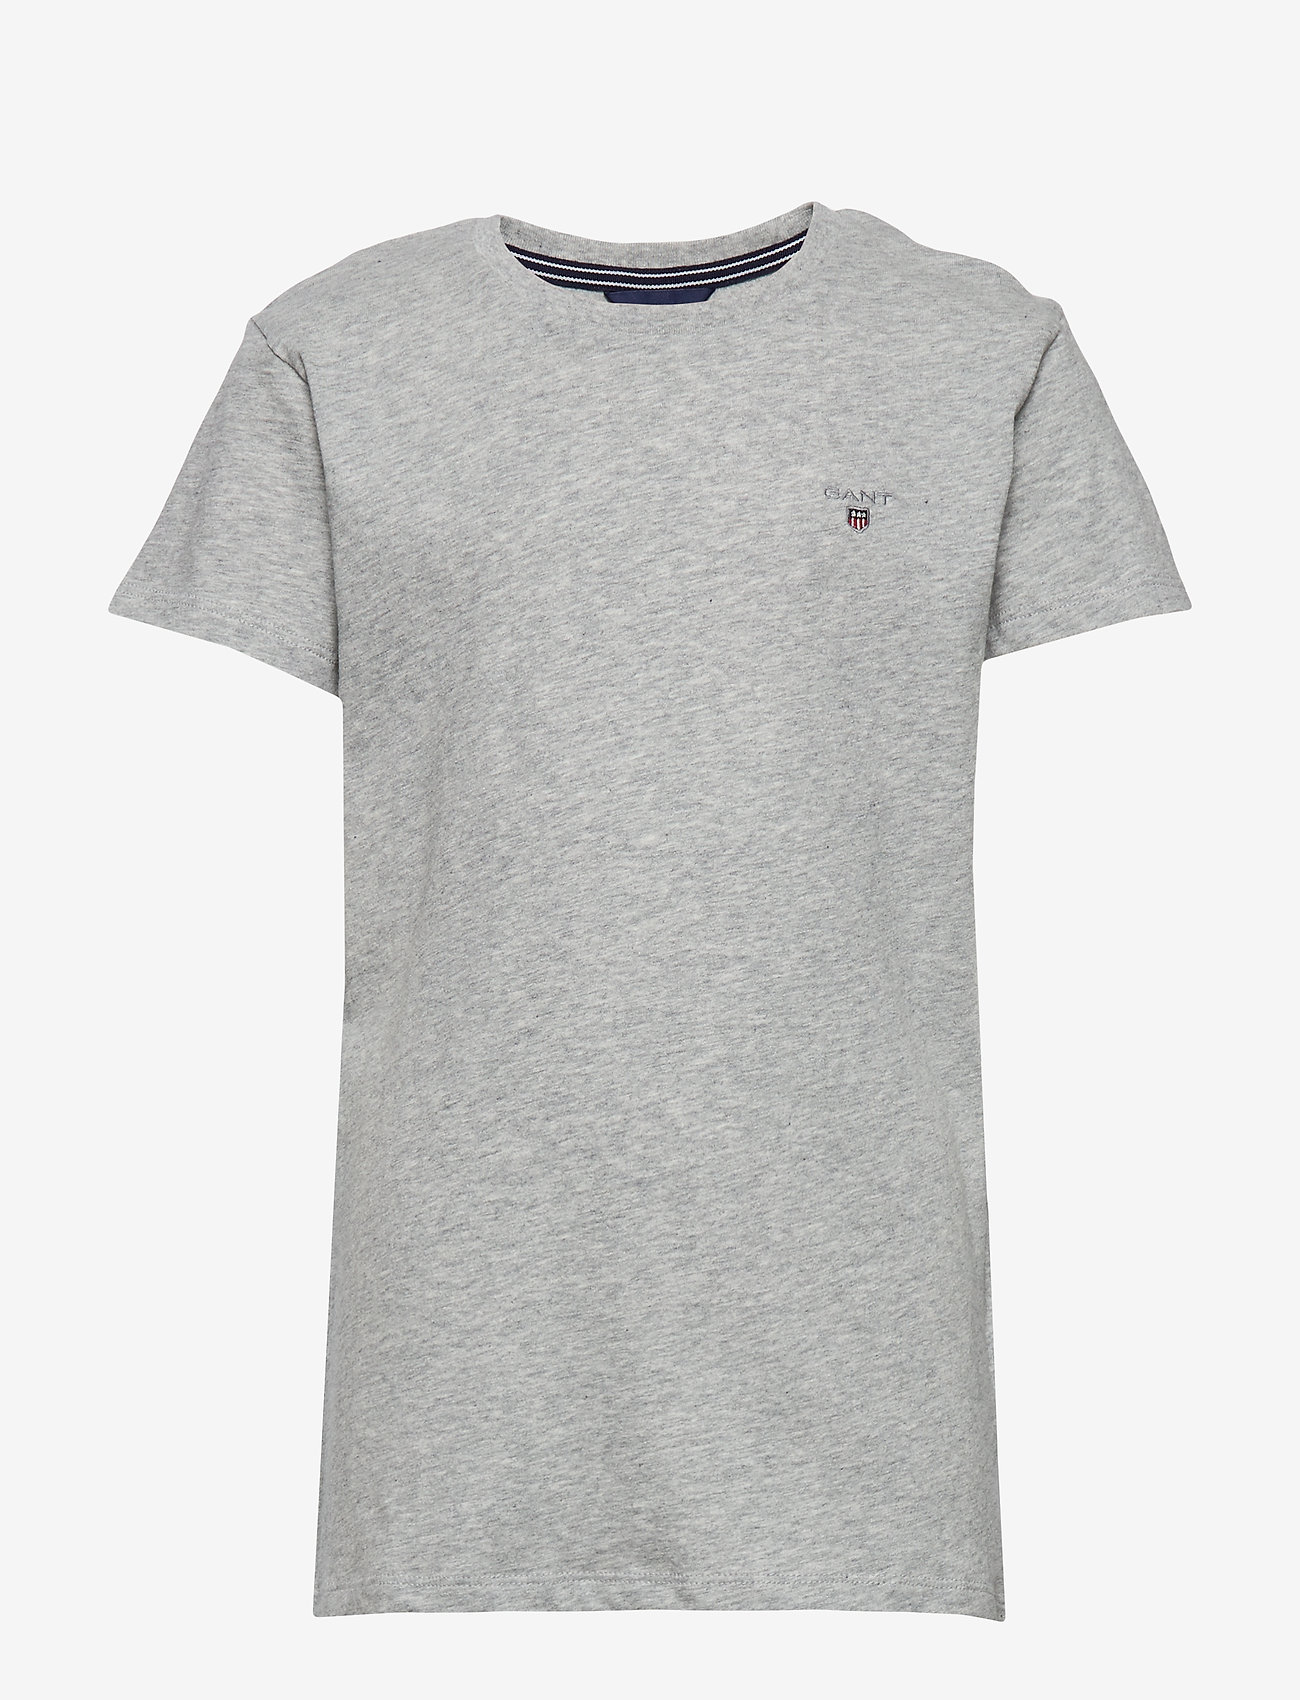 GANT - THE ORIGINAL SS T-SHIRT - t-shirt uni à manches courtes - light grey melange - 0